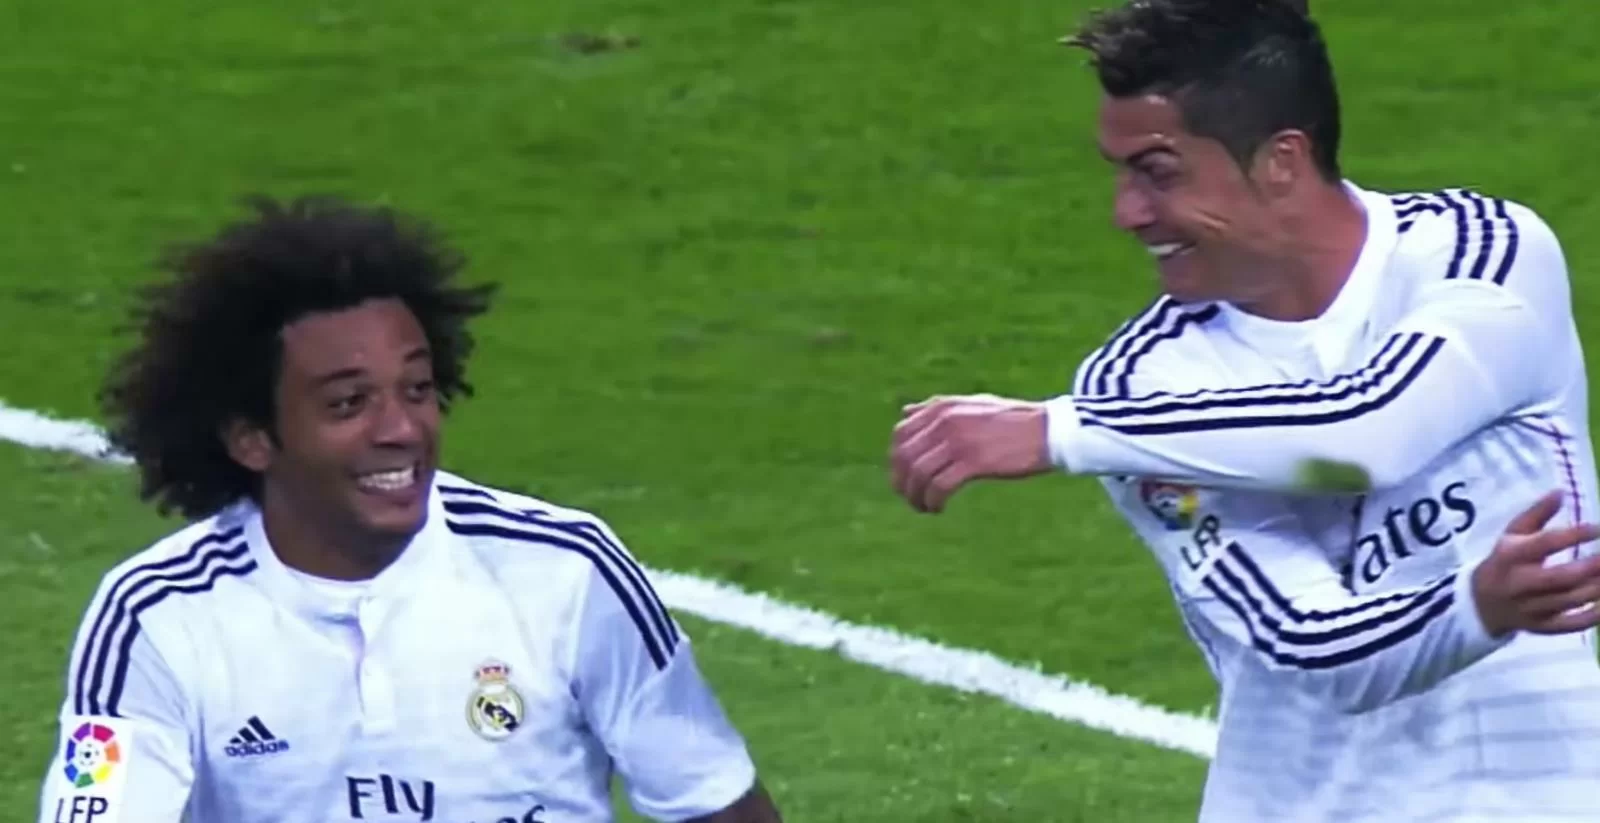 In Spagna non hanno dubbi: Marcelo vuole raggiungere Cristiano Ronaldo alla Juventus